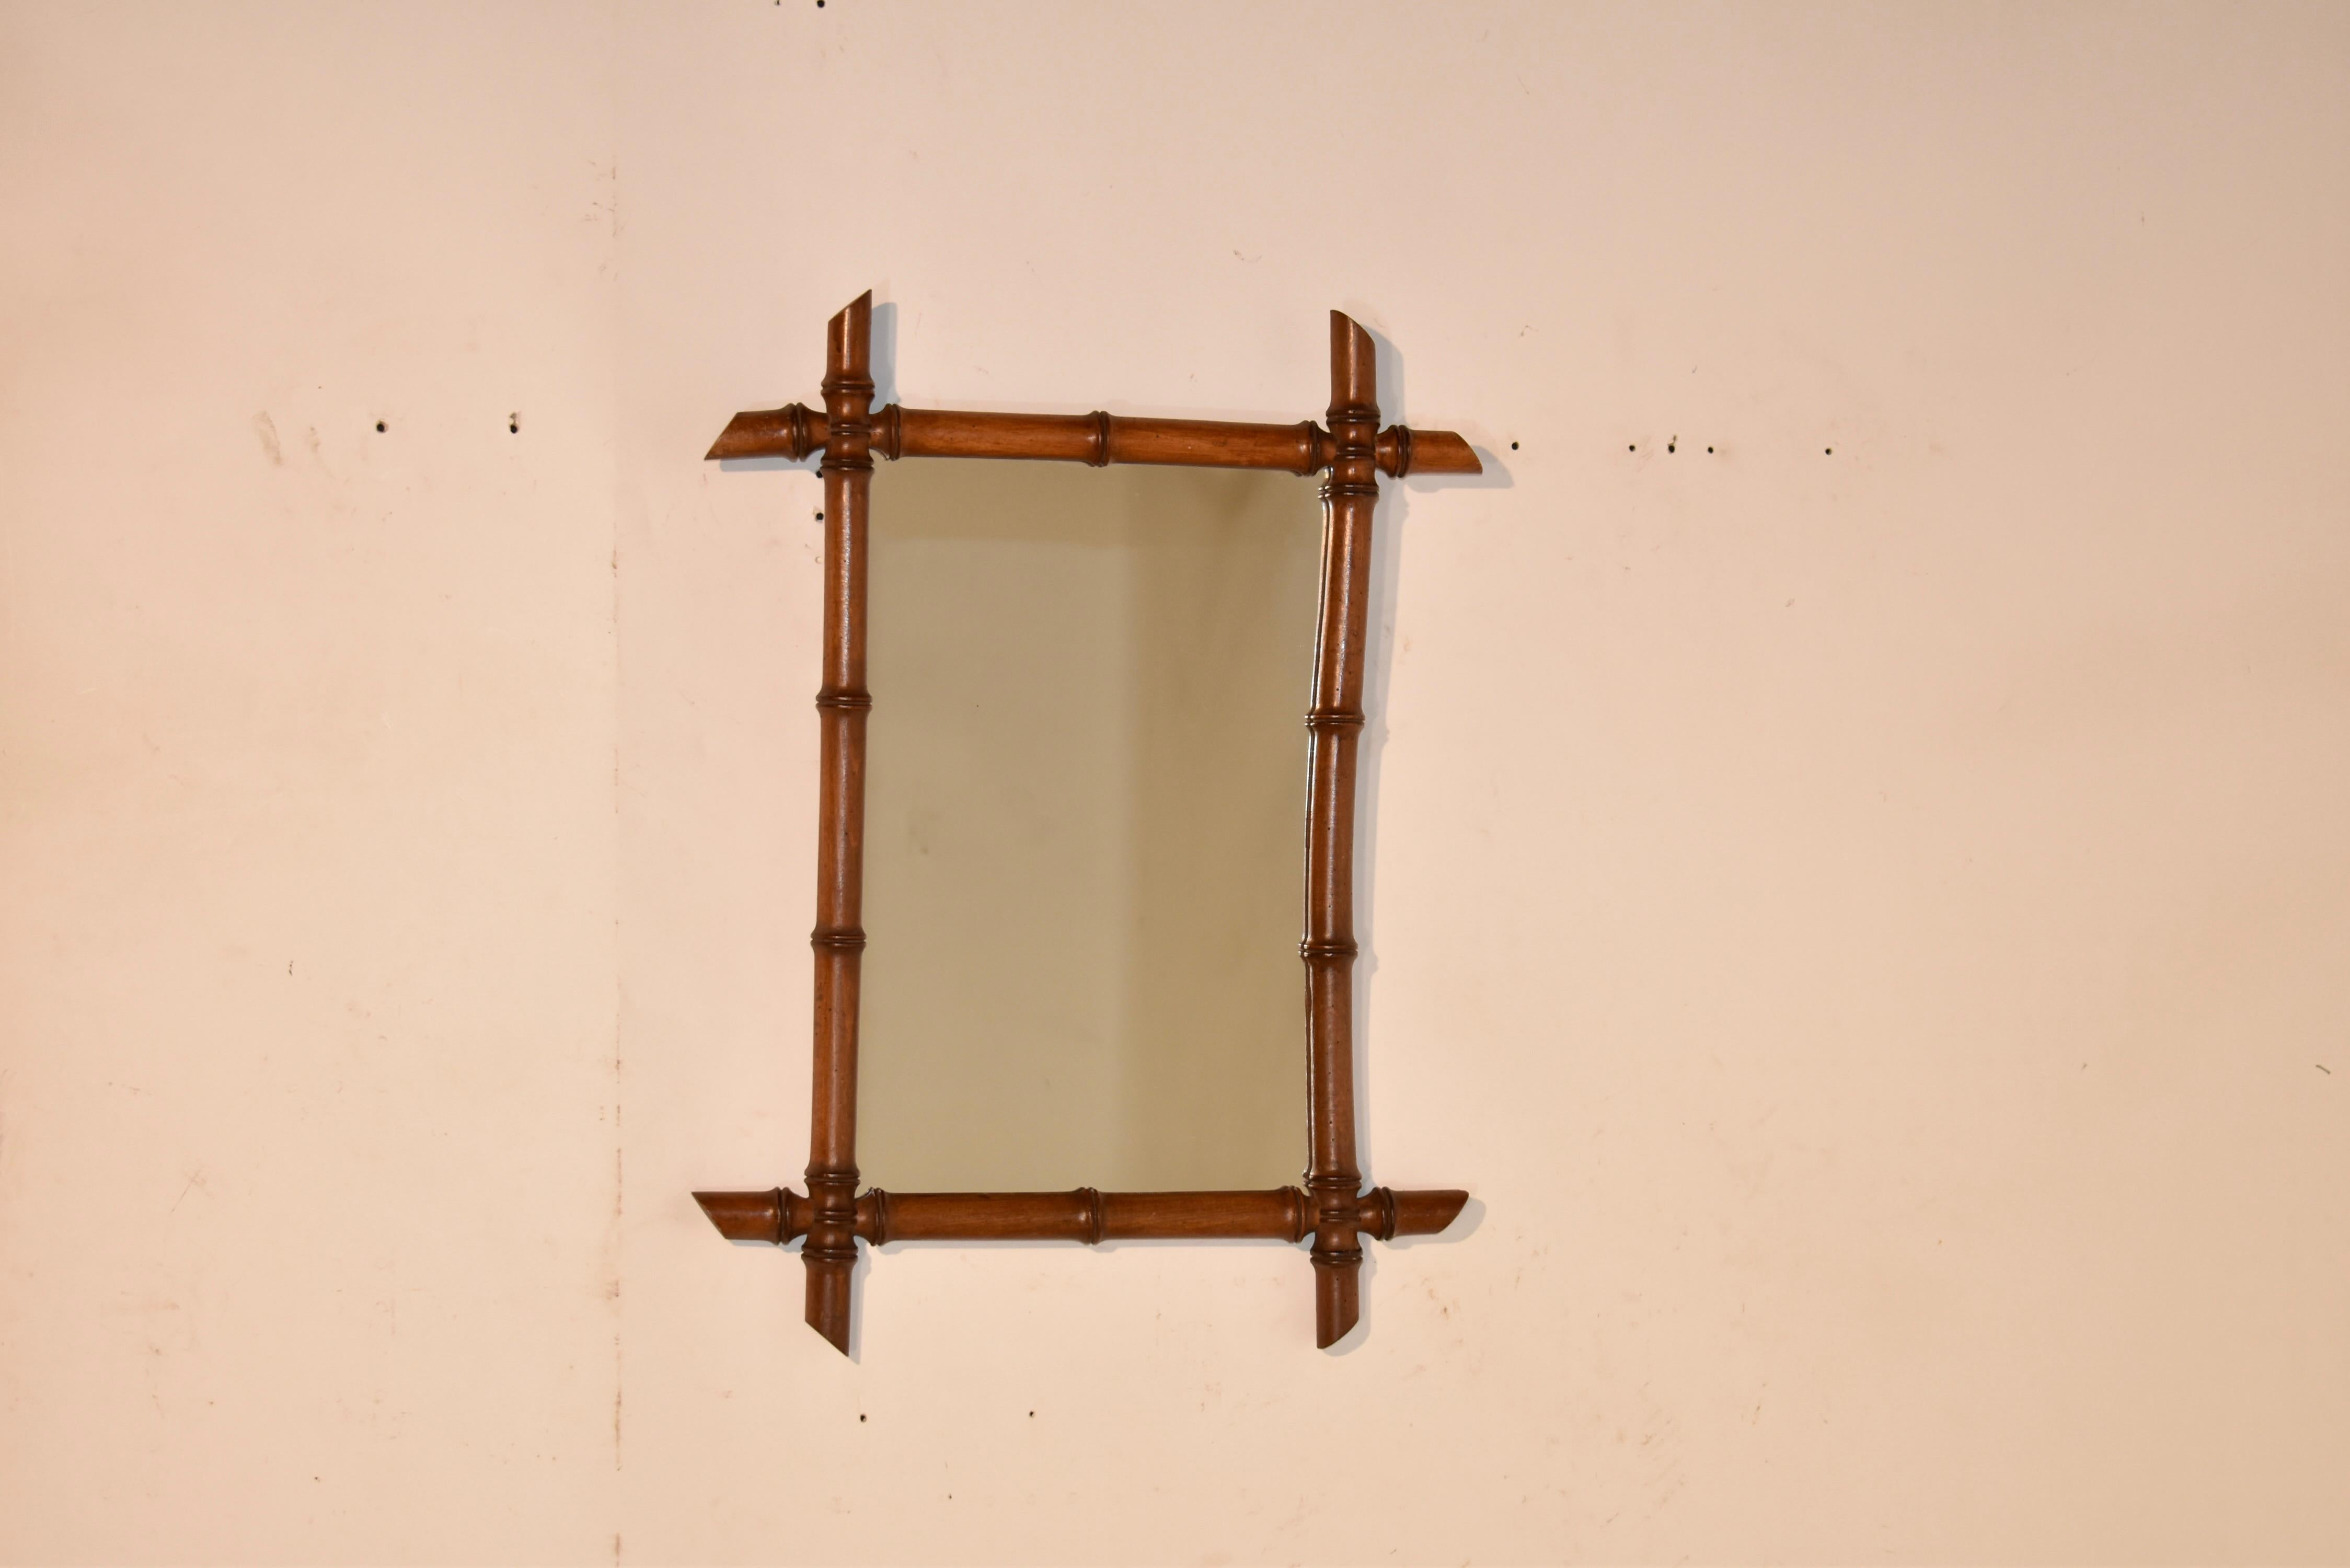 Wandspiegel aus Bambusimitat aus dem späten 19. Jahrhundert aus Frankreich.  Der Rahmen ist aus Kirsche gedreht und sieht aus wie Bambus.  Der Rahmen umgibt einen Spiegel.  Diese wunderbaren Spiegel passen zu jedem Einrichtungsstil.